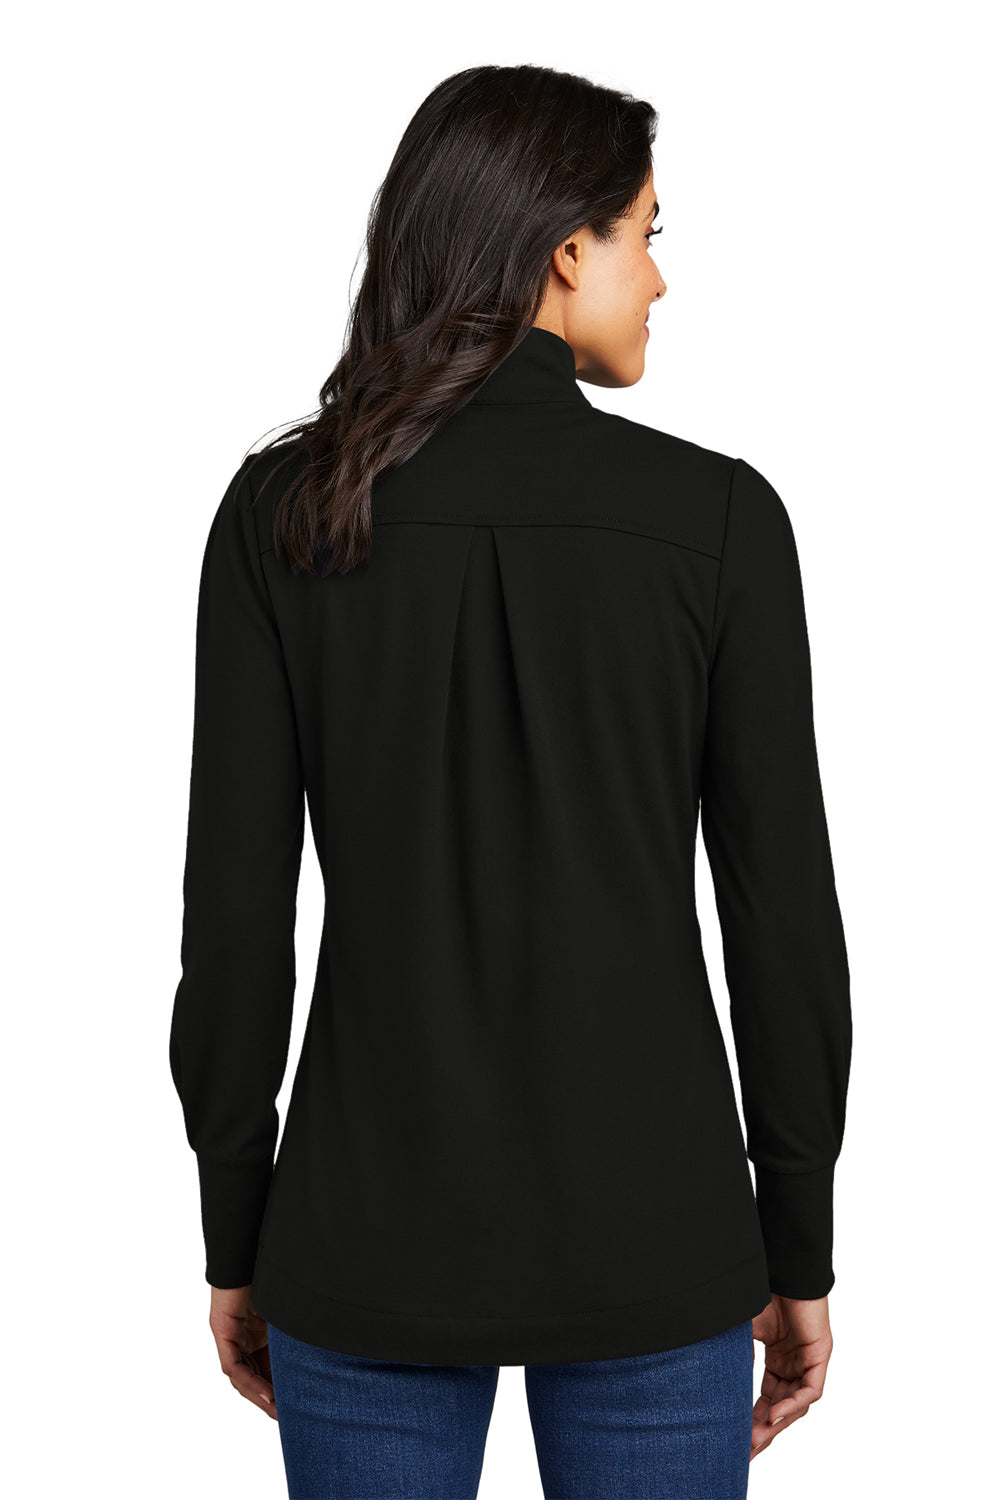 Port Authority Womens Fairway 1/4 Zip Sweatshirt Deep Black Back